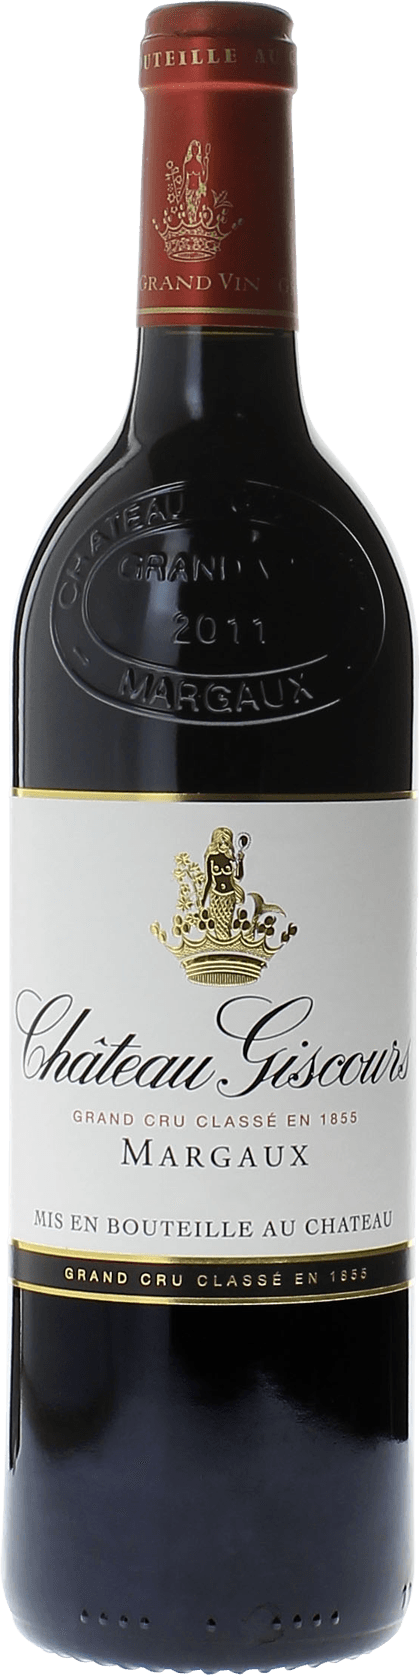 Giscours 2007 3me Grand cru class Margaux, Bordeaux rouge